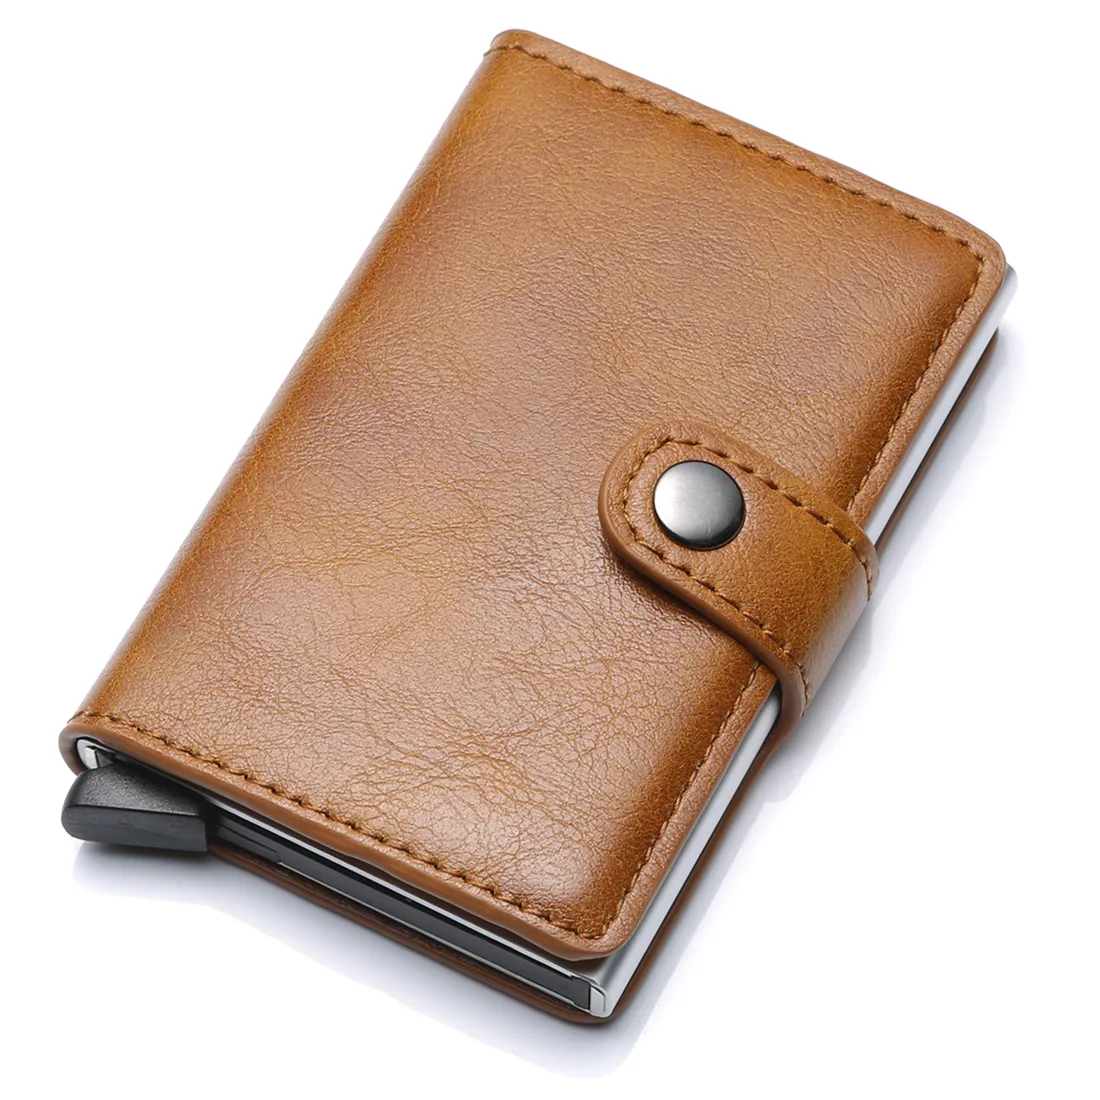 Carteira masculina pop-up, suporte para cartão de crédito, carteira inteligente, minimalista, fina, de couro